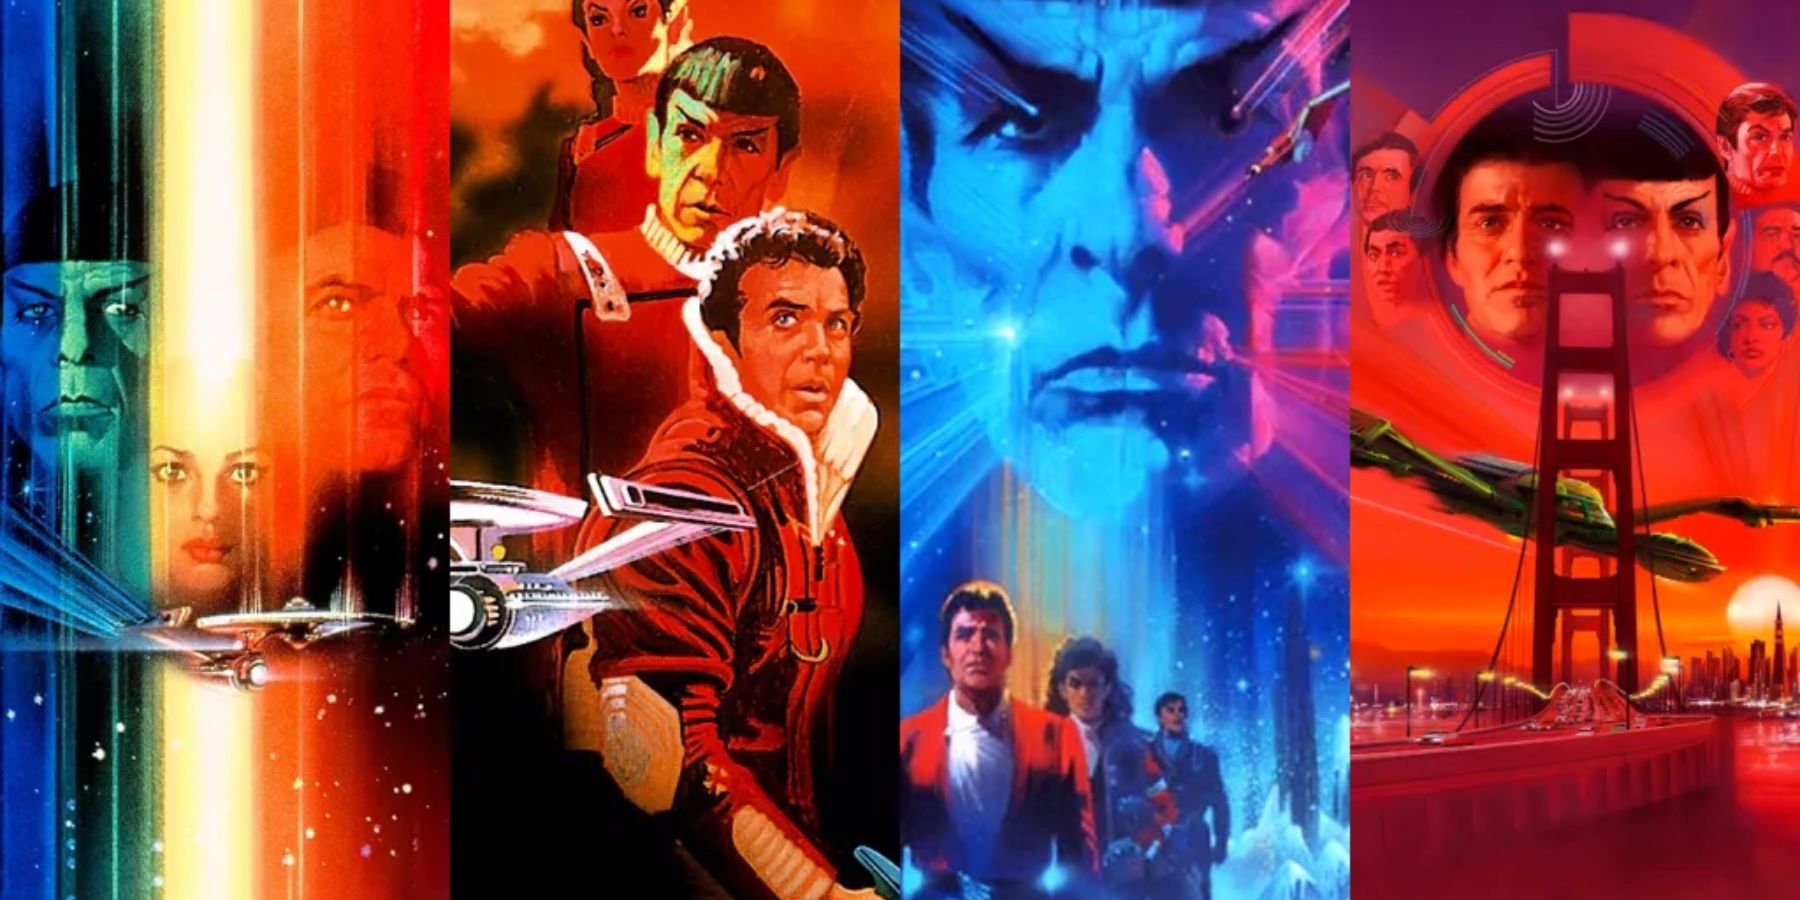 Mi a legjobb rendelés a Star Trek filmek megtekintéséhez?